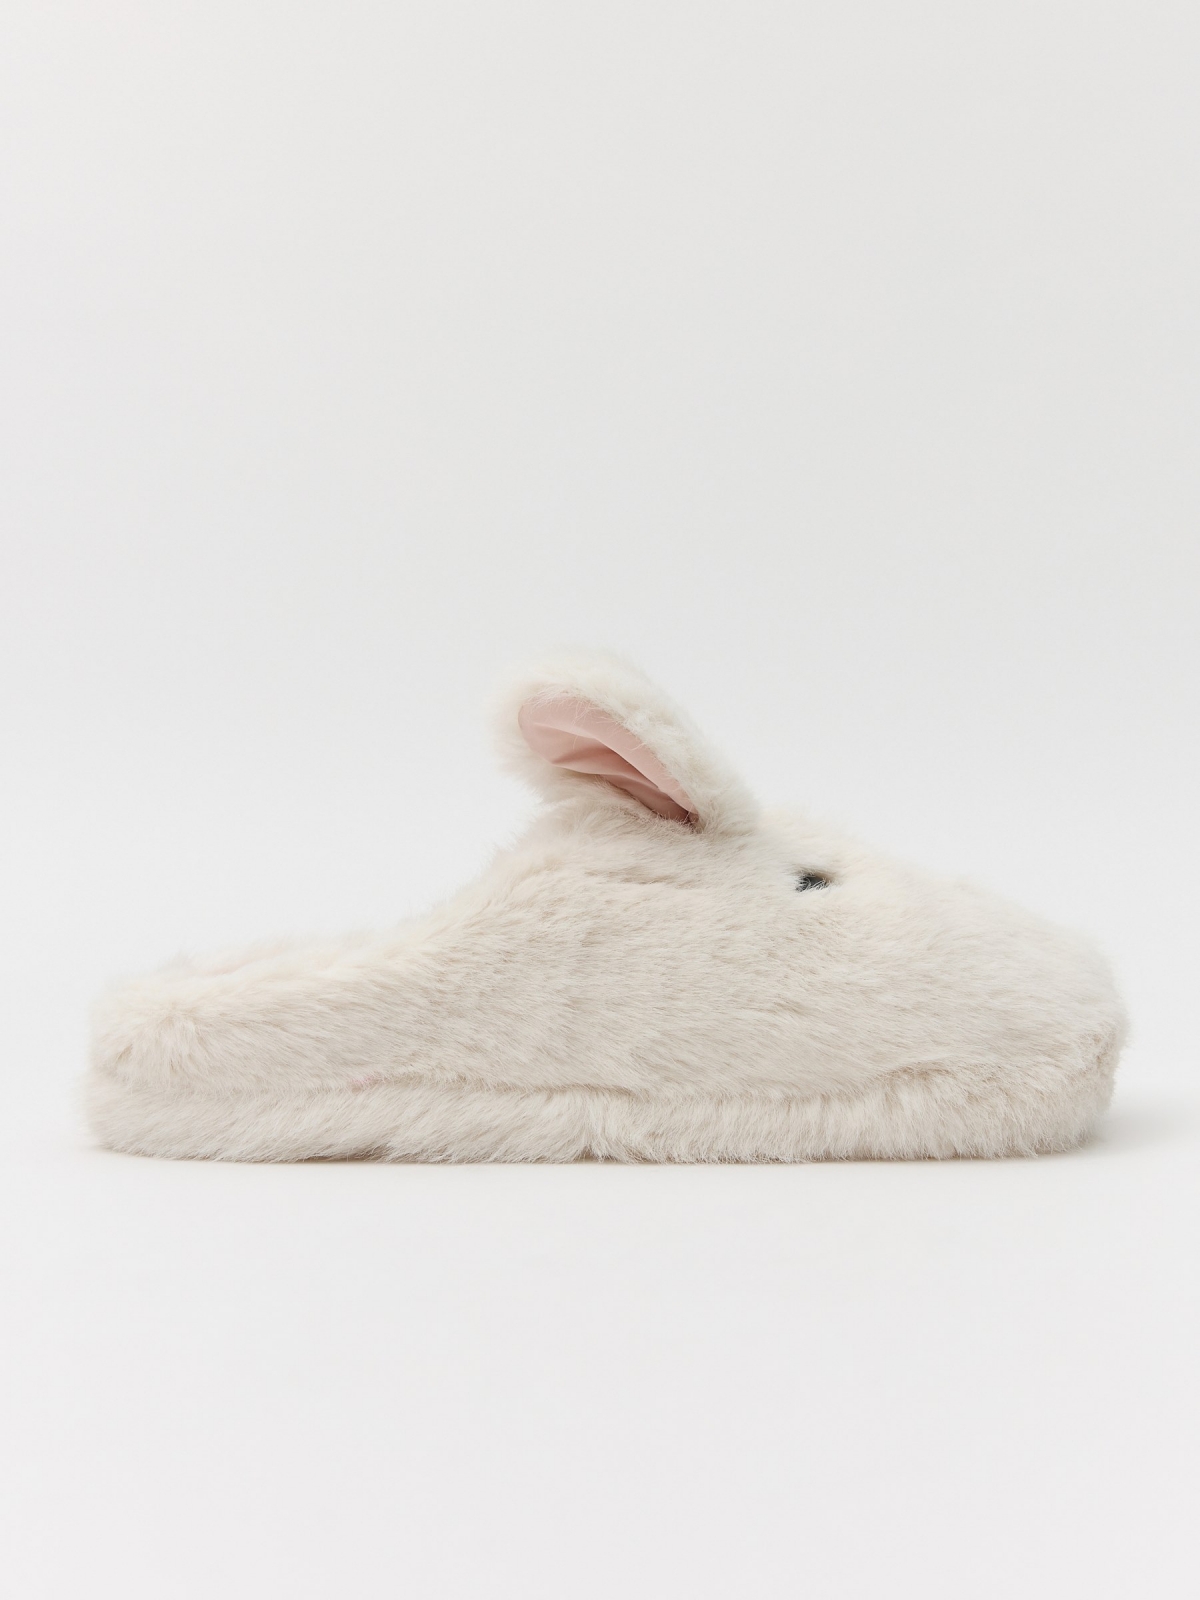 Zapatillas de casa orejas conejo blanco roto vista general frontal